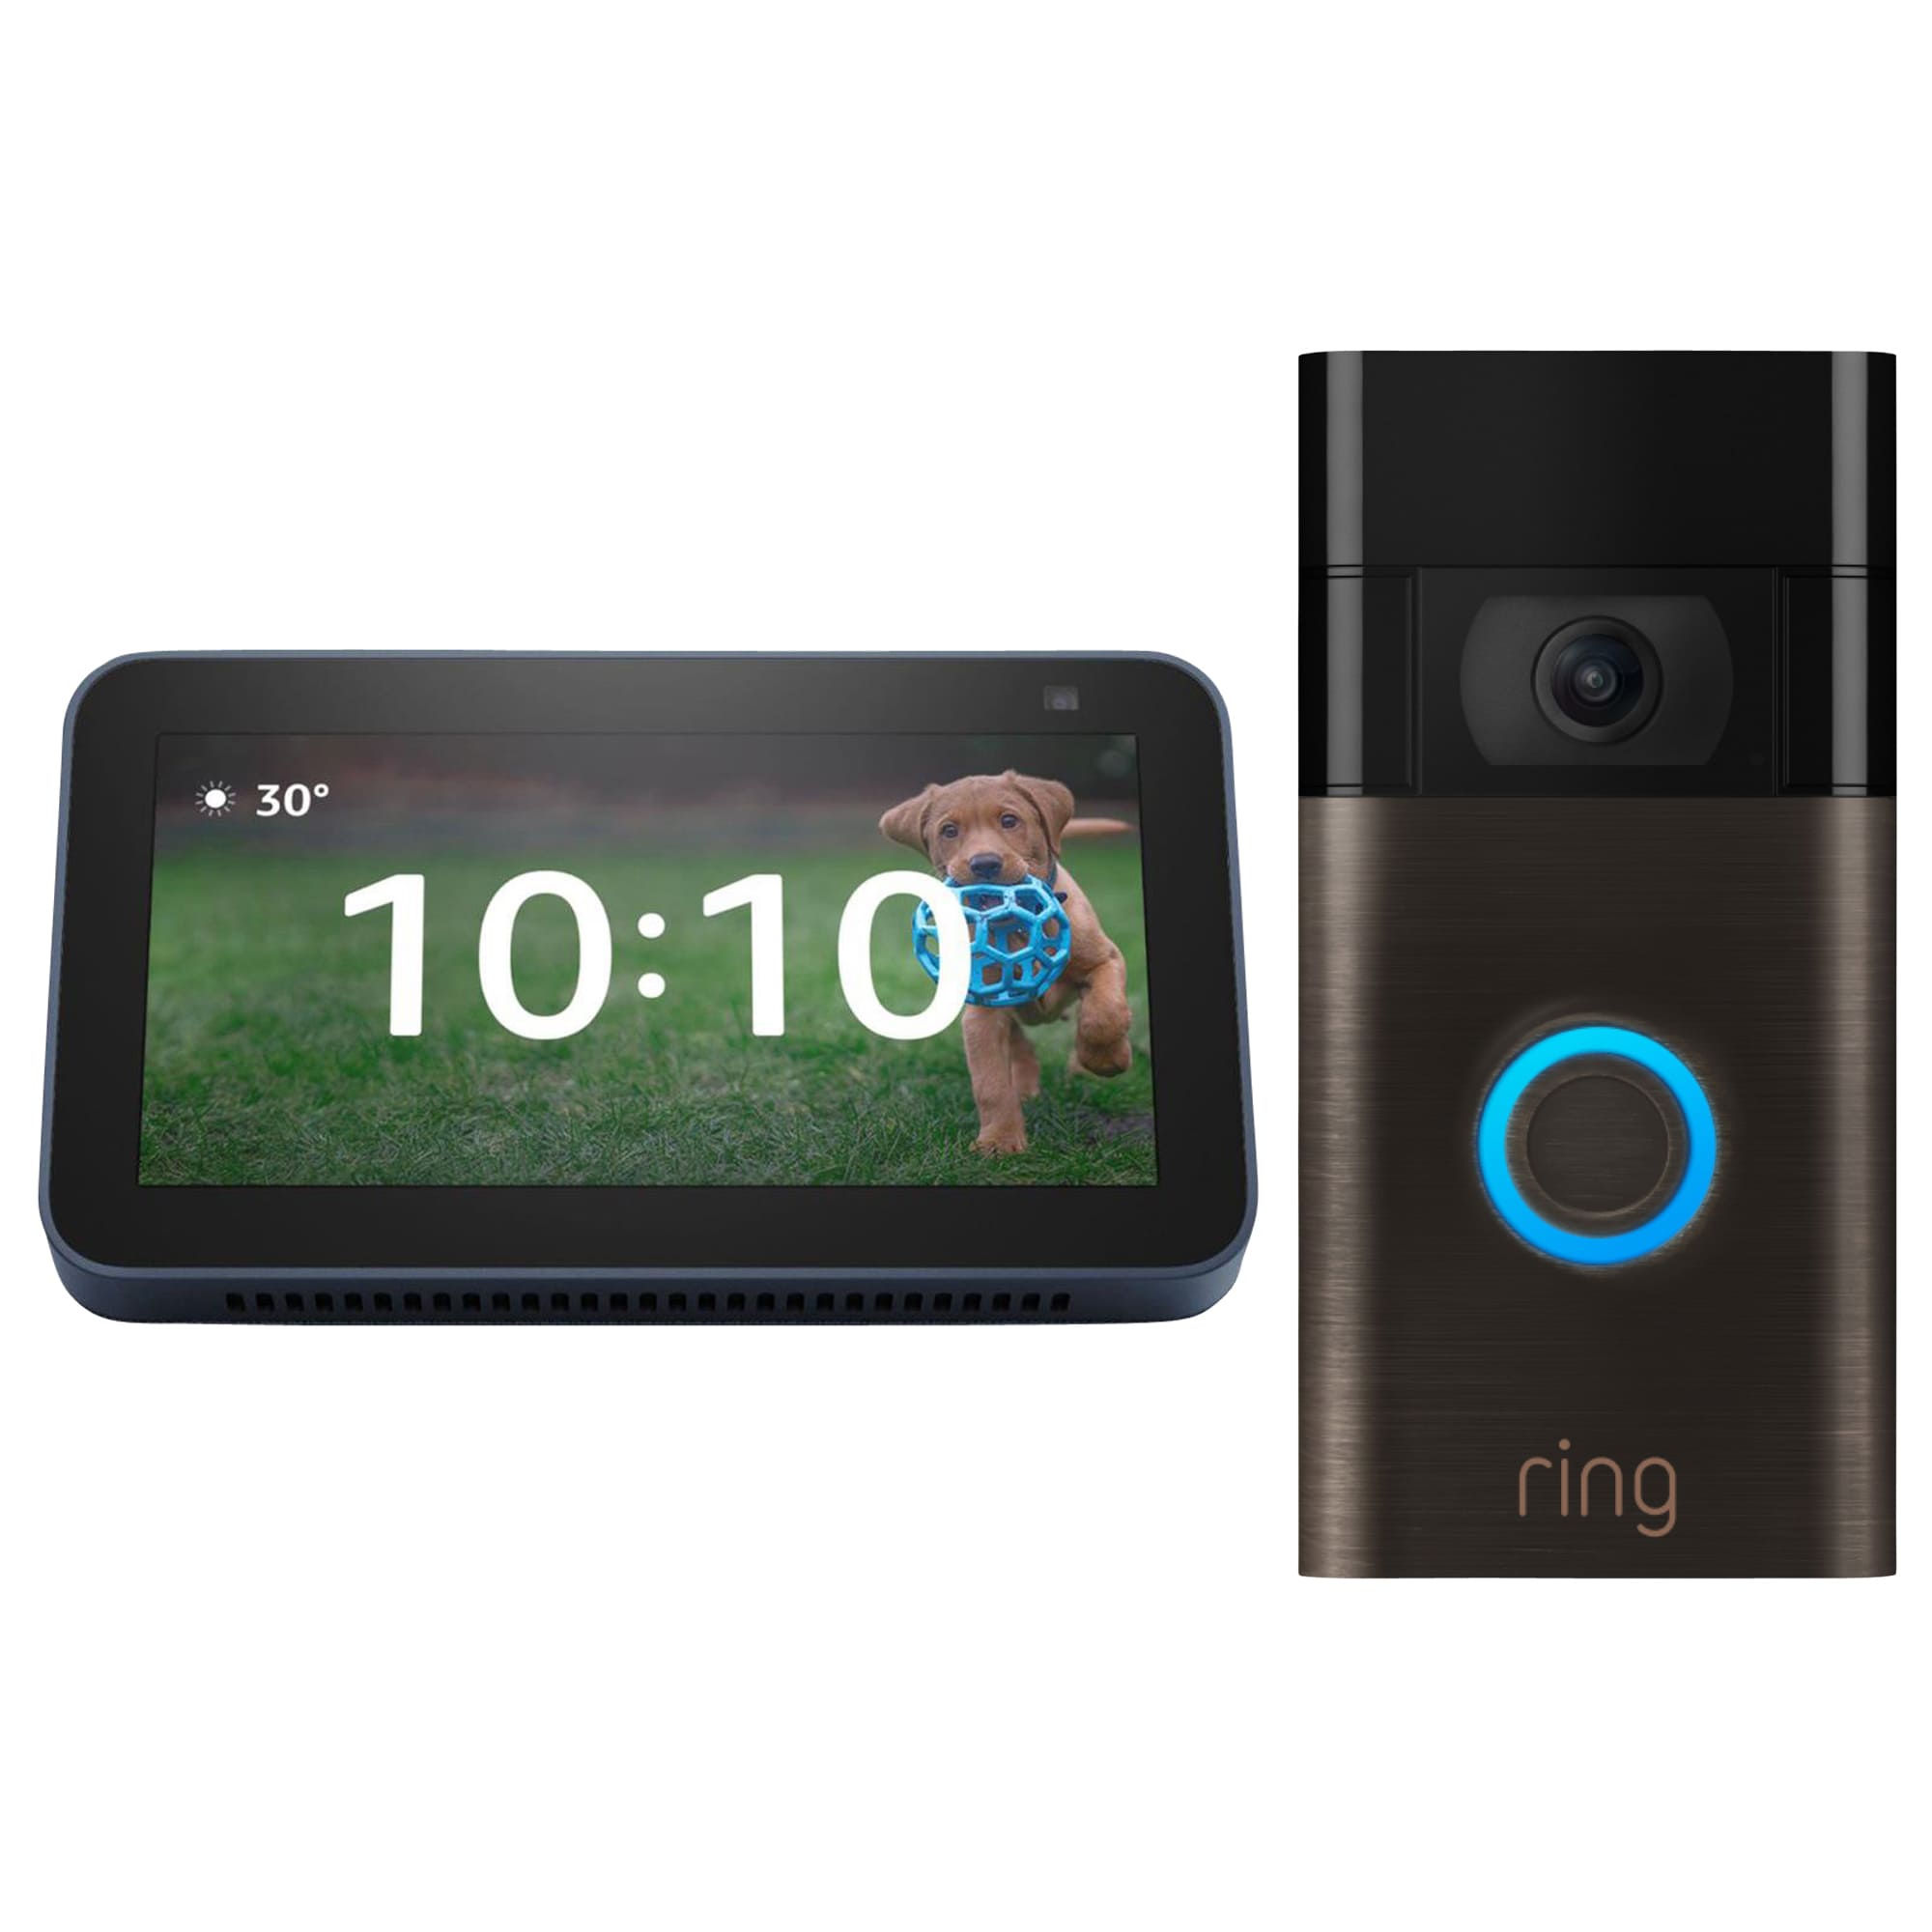 Amazon Amazon Echo Show 5 - Blue (2nd Gen) + Ring Video Doorbell - Venetian Bronze Bundle